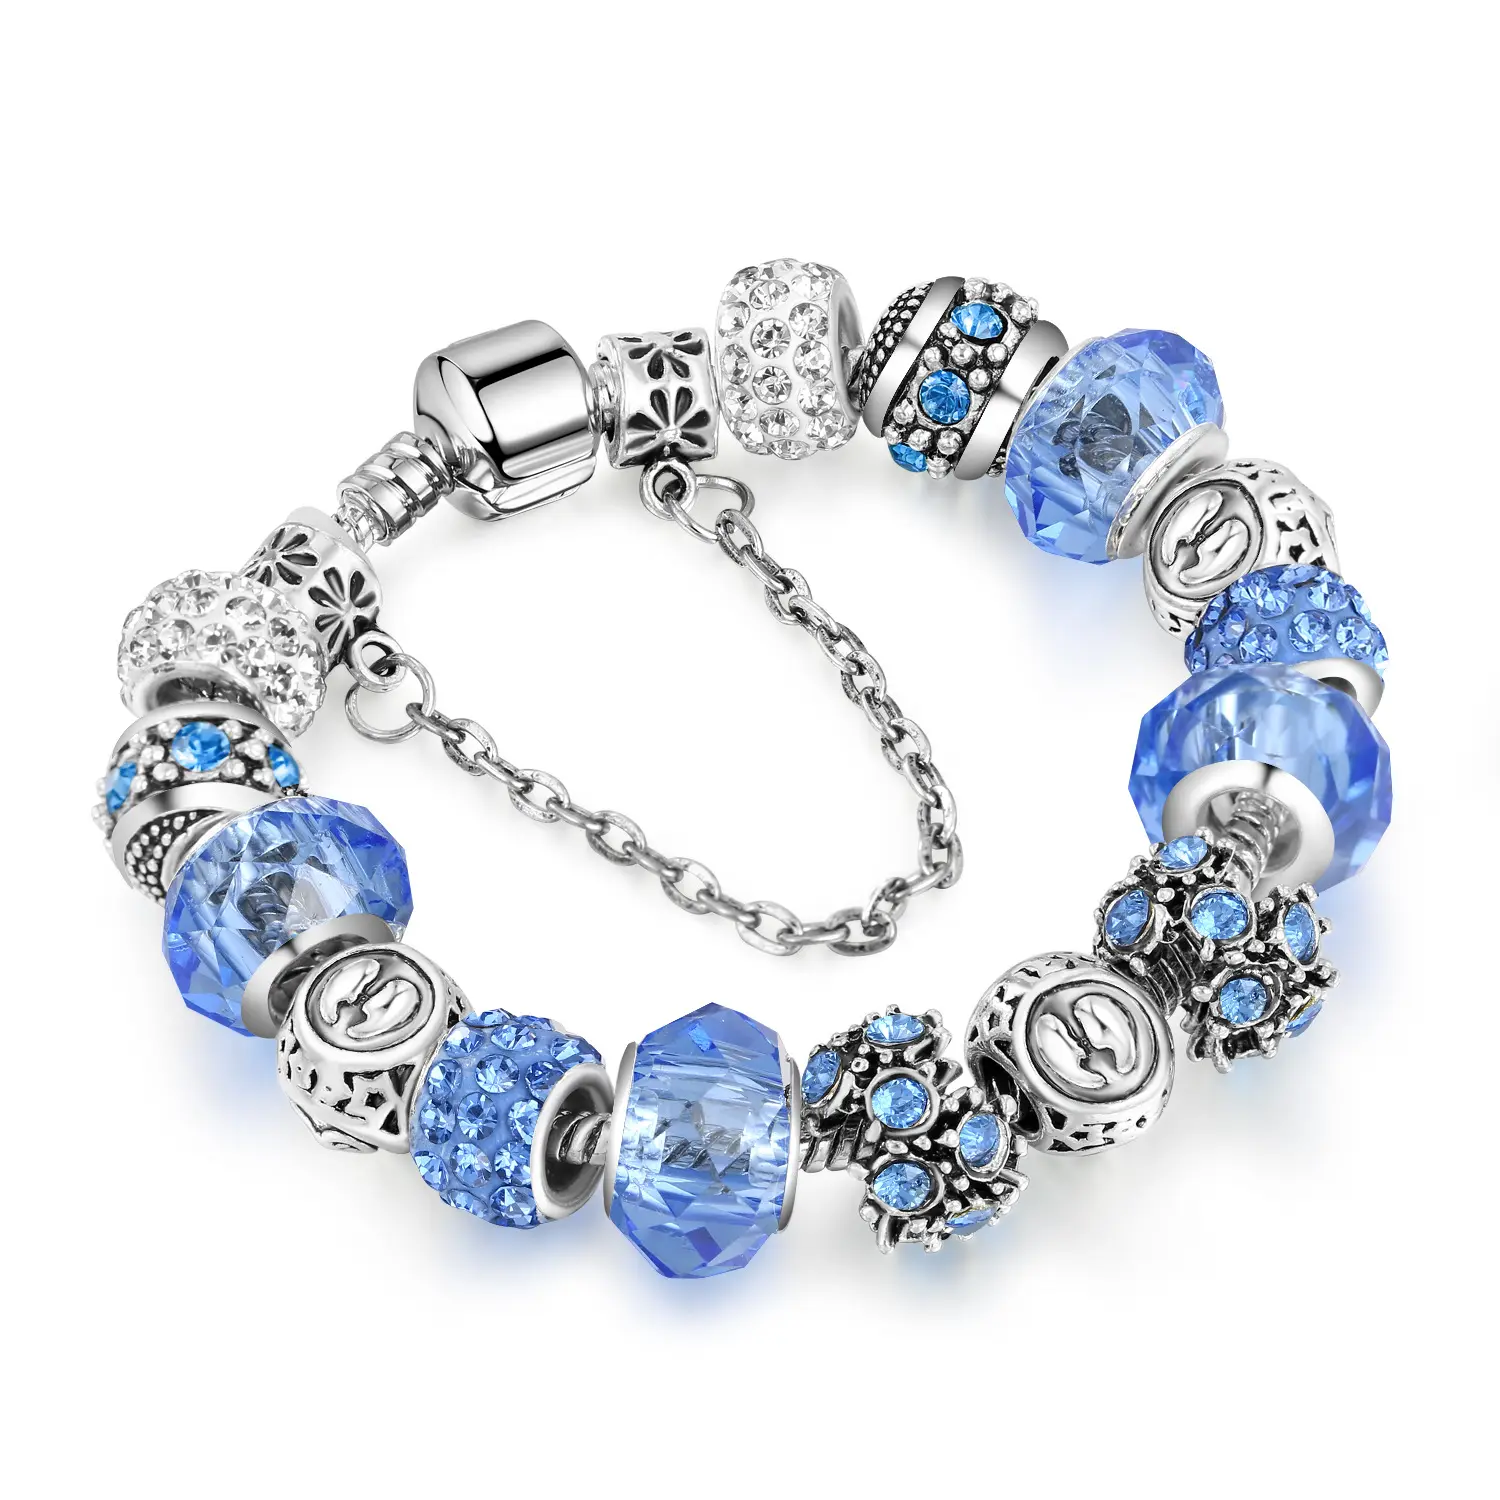 Nuovo arrivo grande foro perline oroscopo braccialetto di fascino europeo perline di cristallo blu braccialetto di fascino dello zodiaco per il regalo